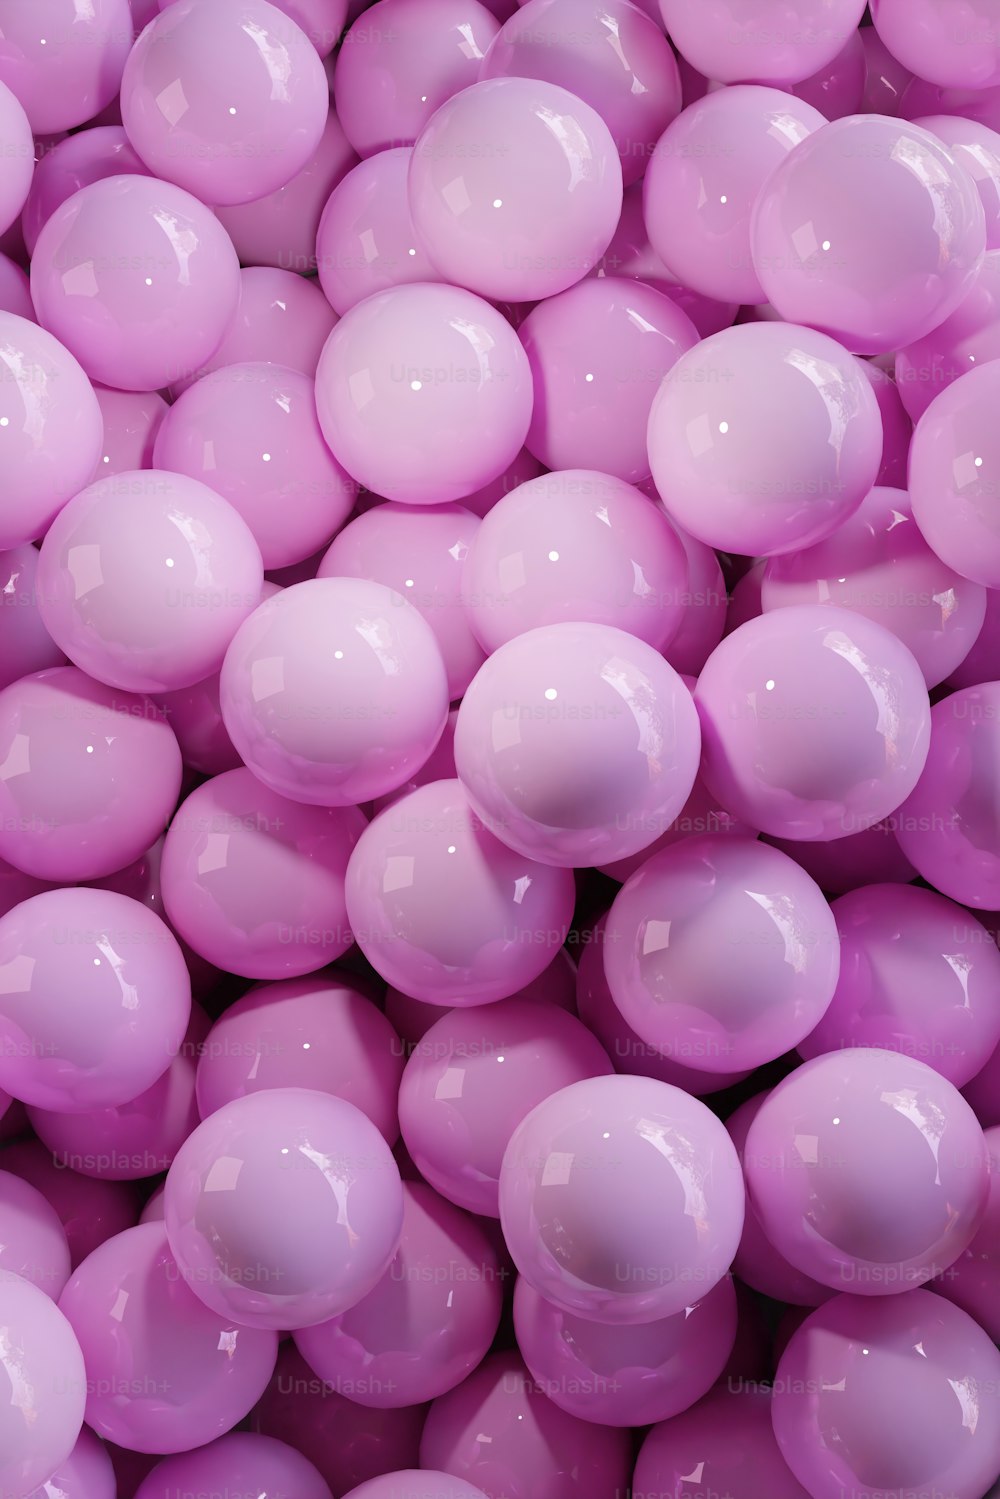 Un primo piano di un mazzo di palline rosa